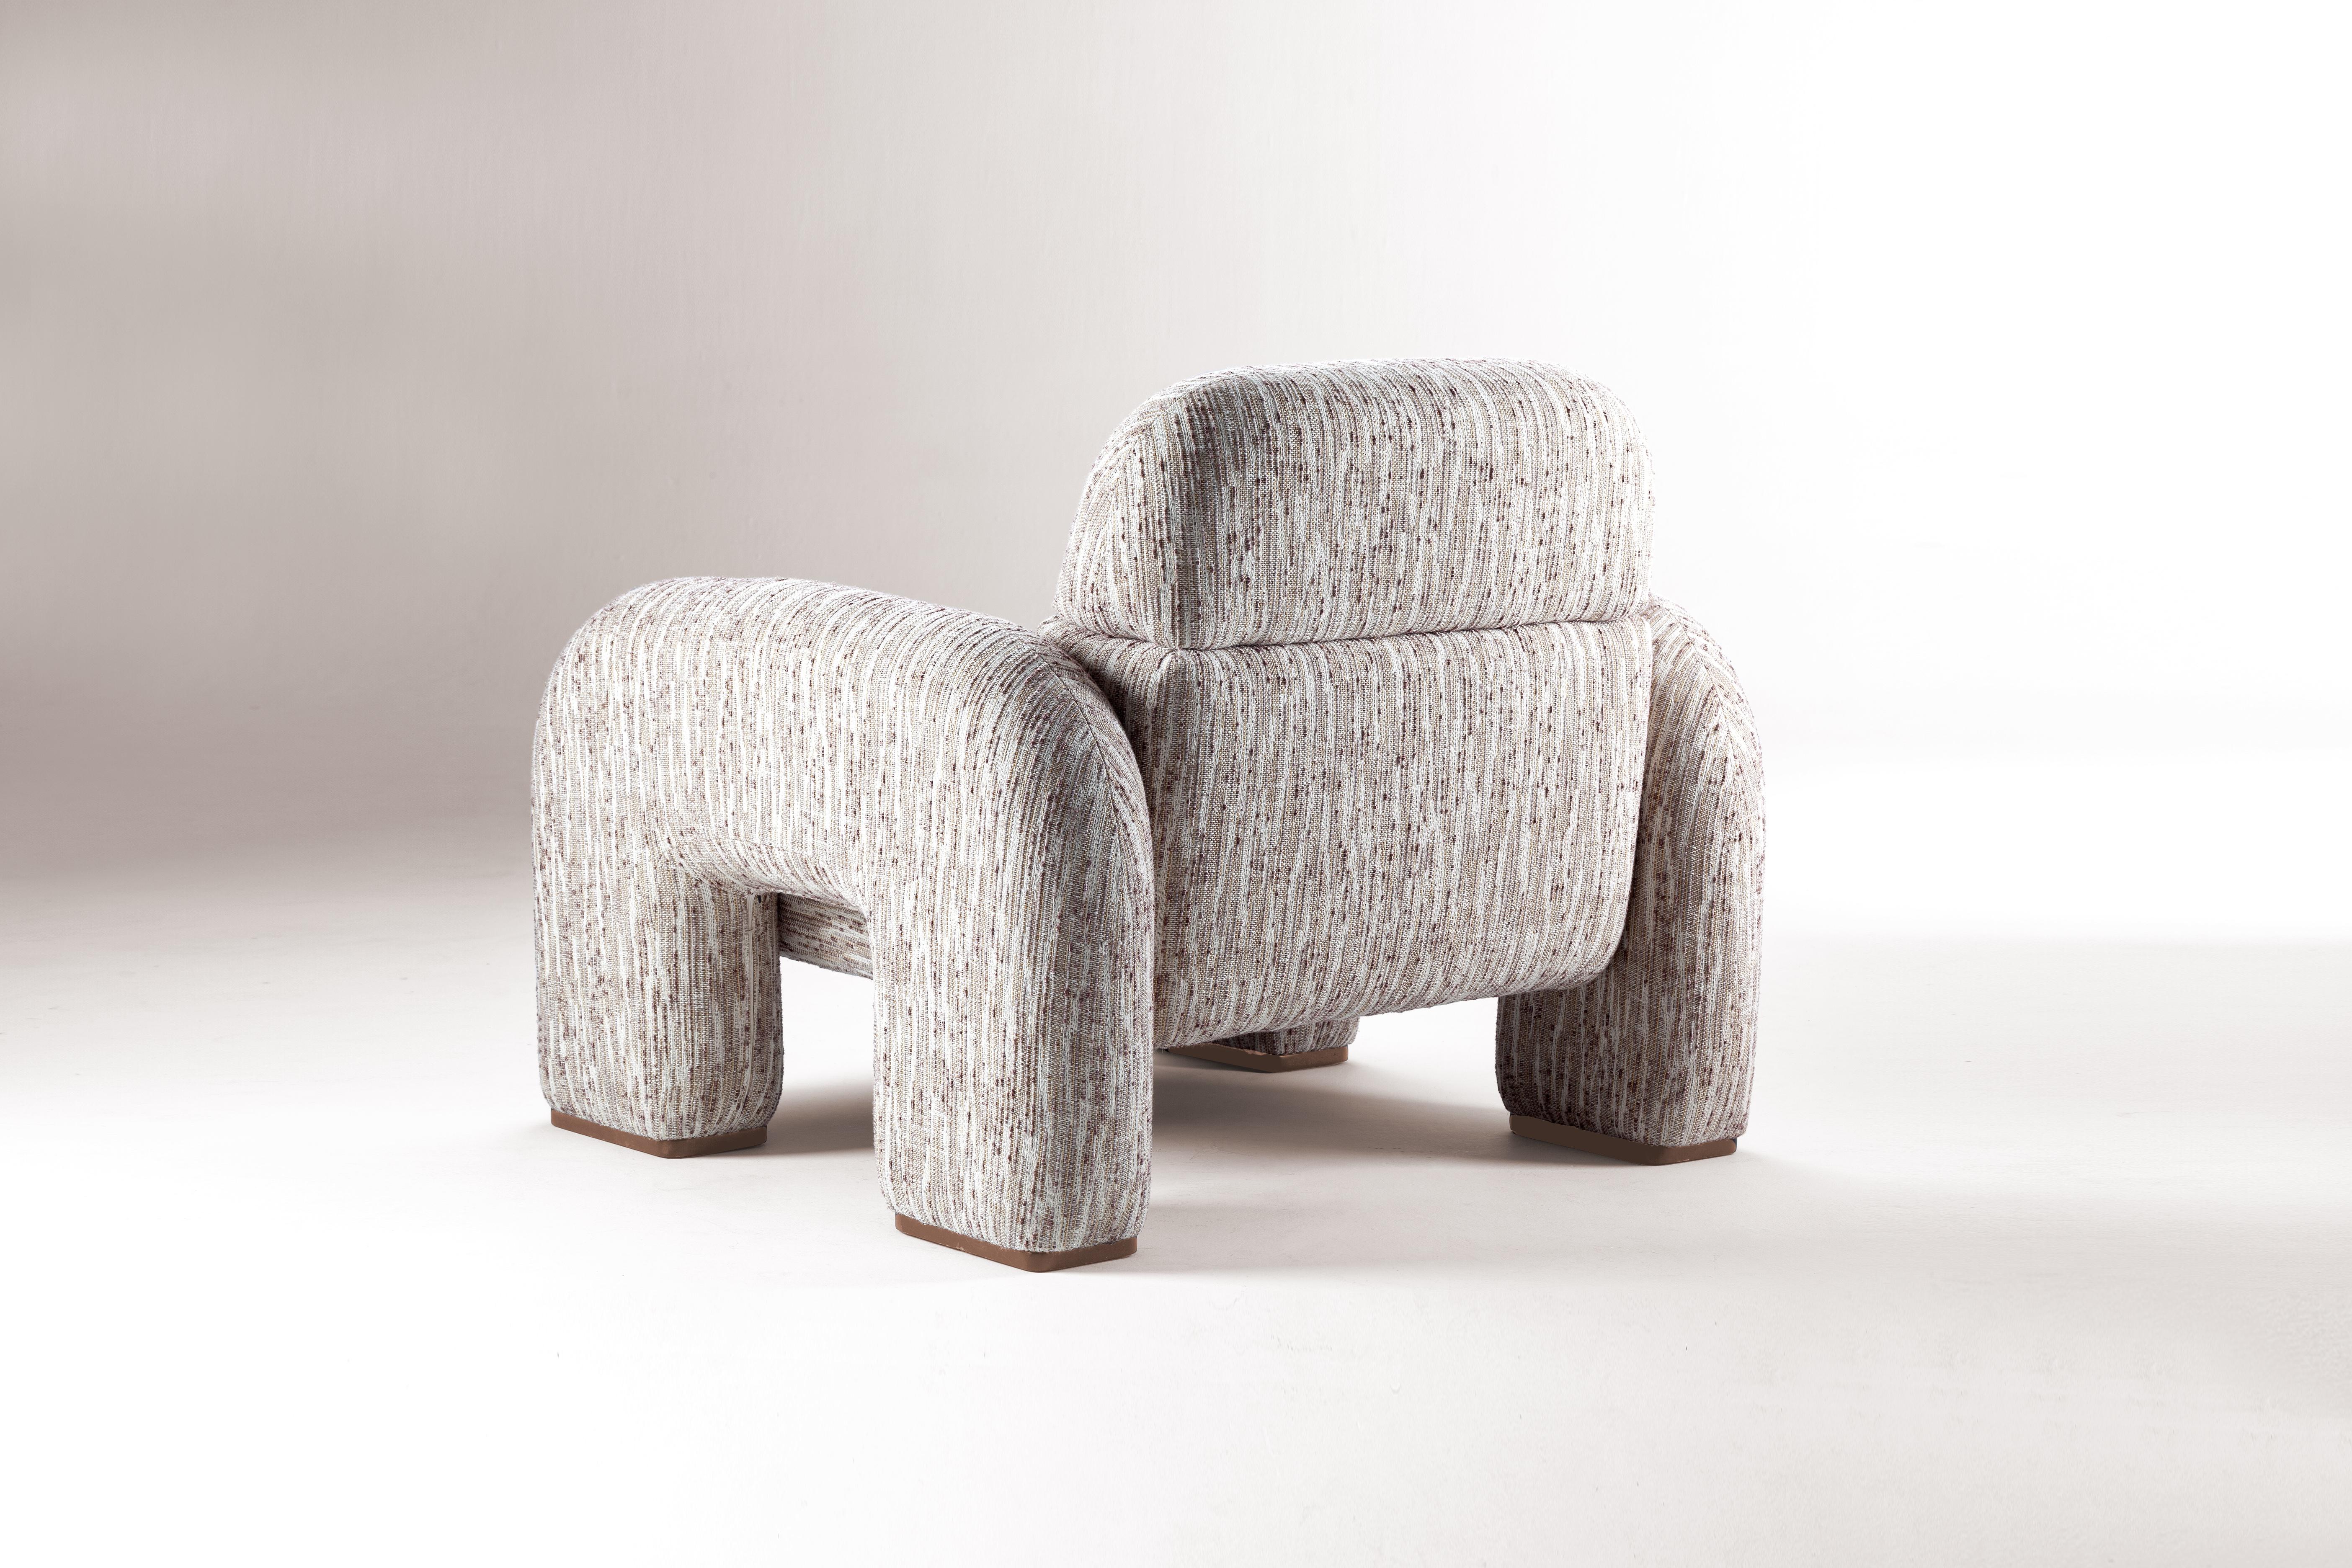 DOOQ! NEU! Organisch-modernistischer Sessel Vertigo in Beige und grauem Stoff (Organische Moderne) im Angebot